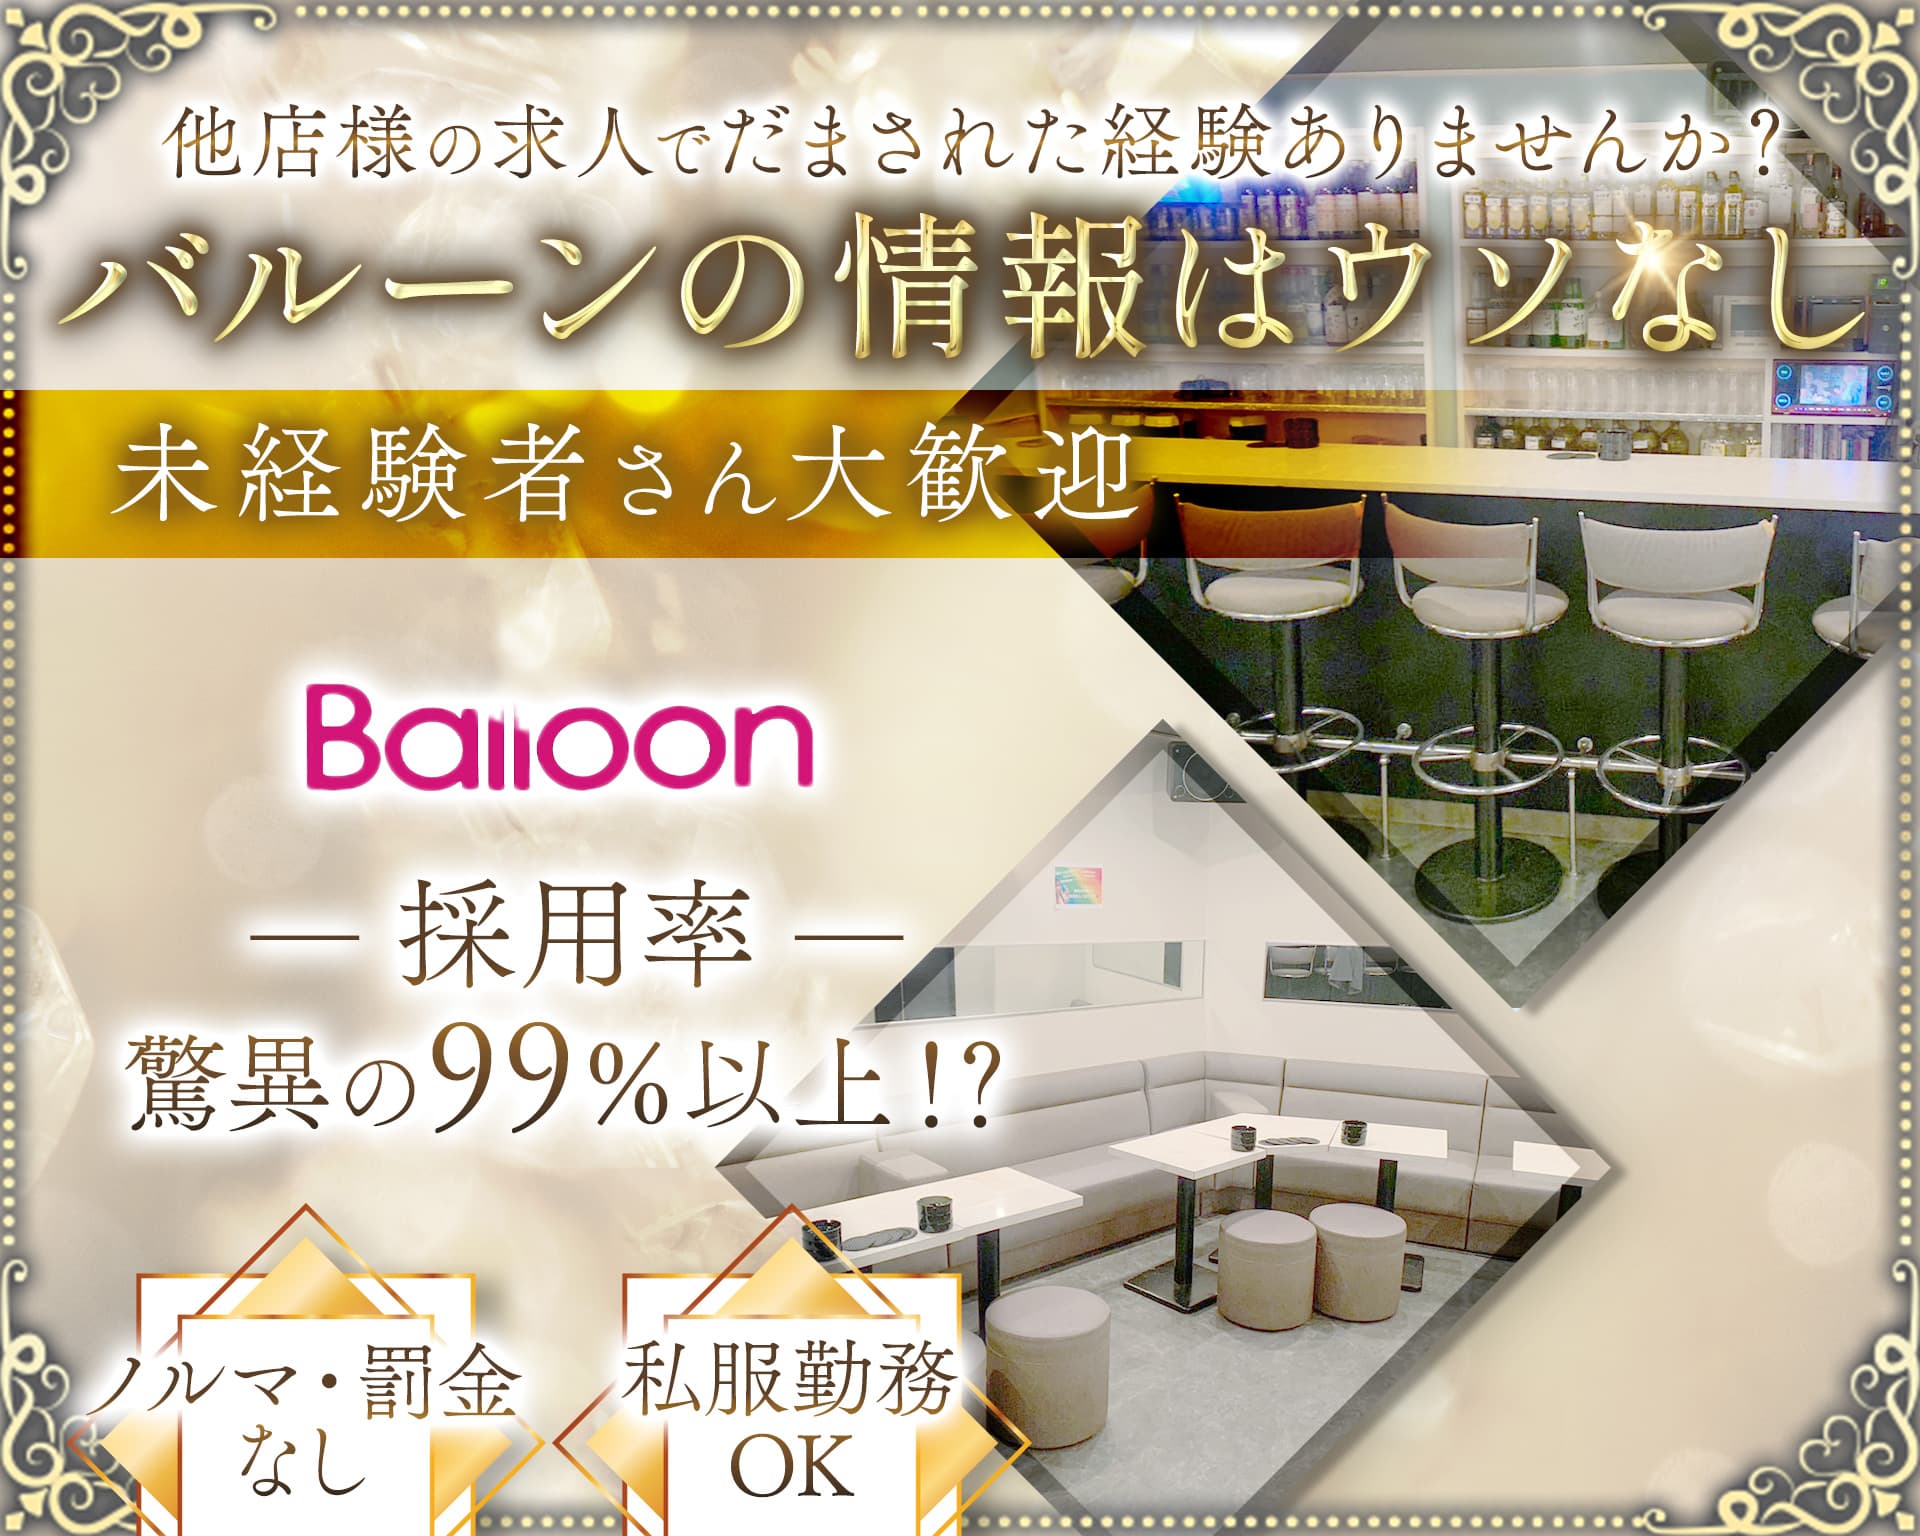 BALLOON（バルーン）【公式体入・求人情報】 赤羽スナック TOP画像